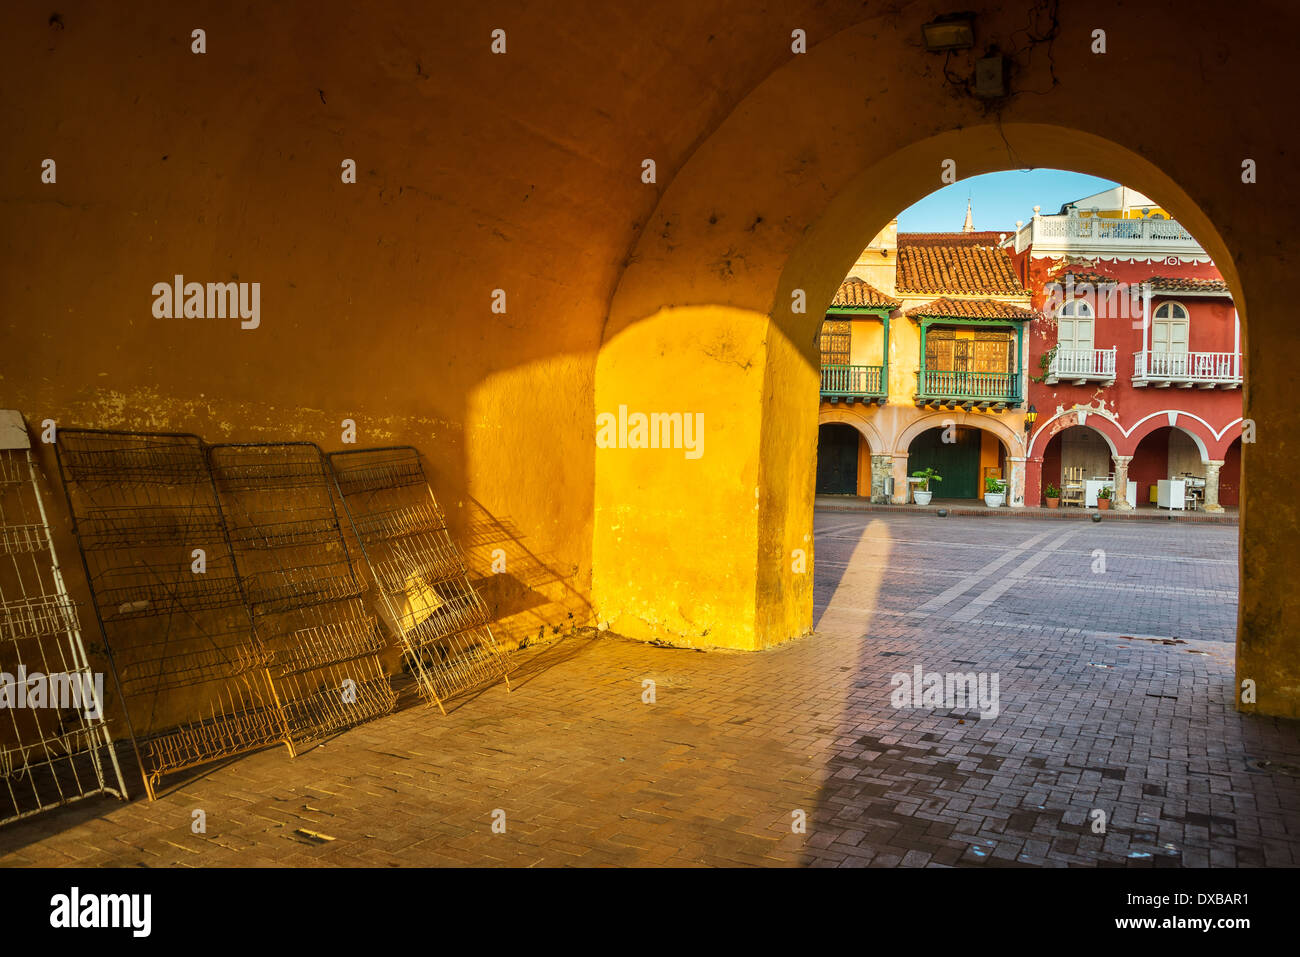 Ingresso alla città vecchia di Cartagena, Colombia con una vista del centro storico di architettura coloniale. Foto Stock